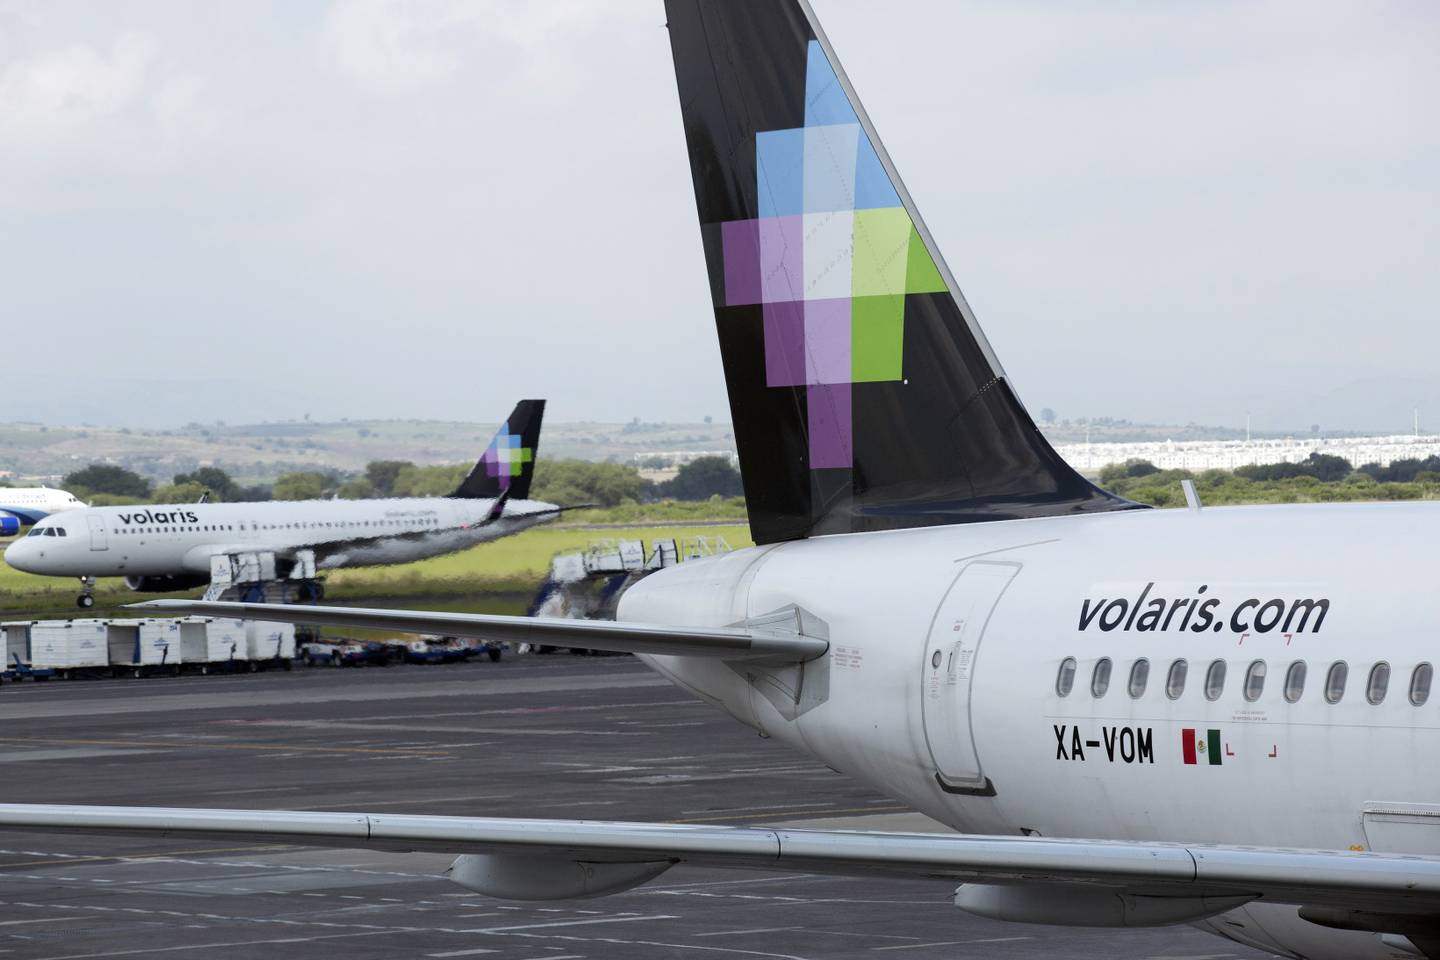 La línea aérea de bajo costo inició operaciones en el aeropuerto de Toluca hace 16 años.